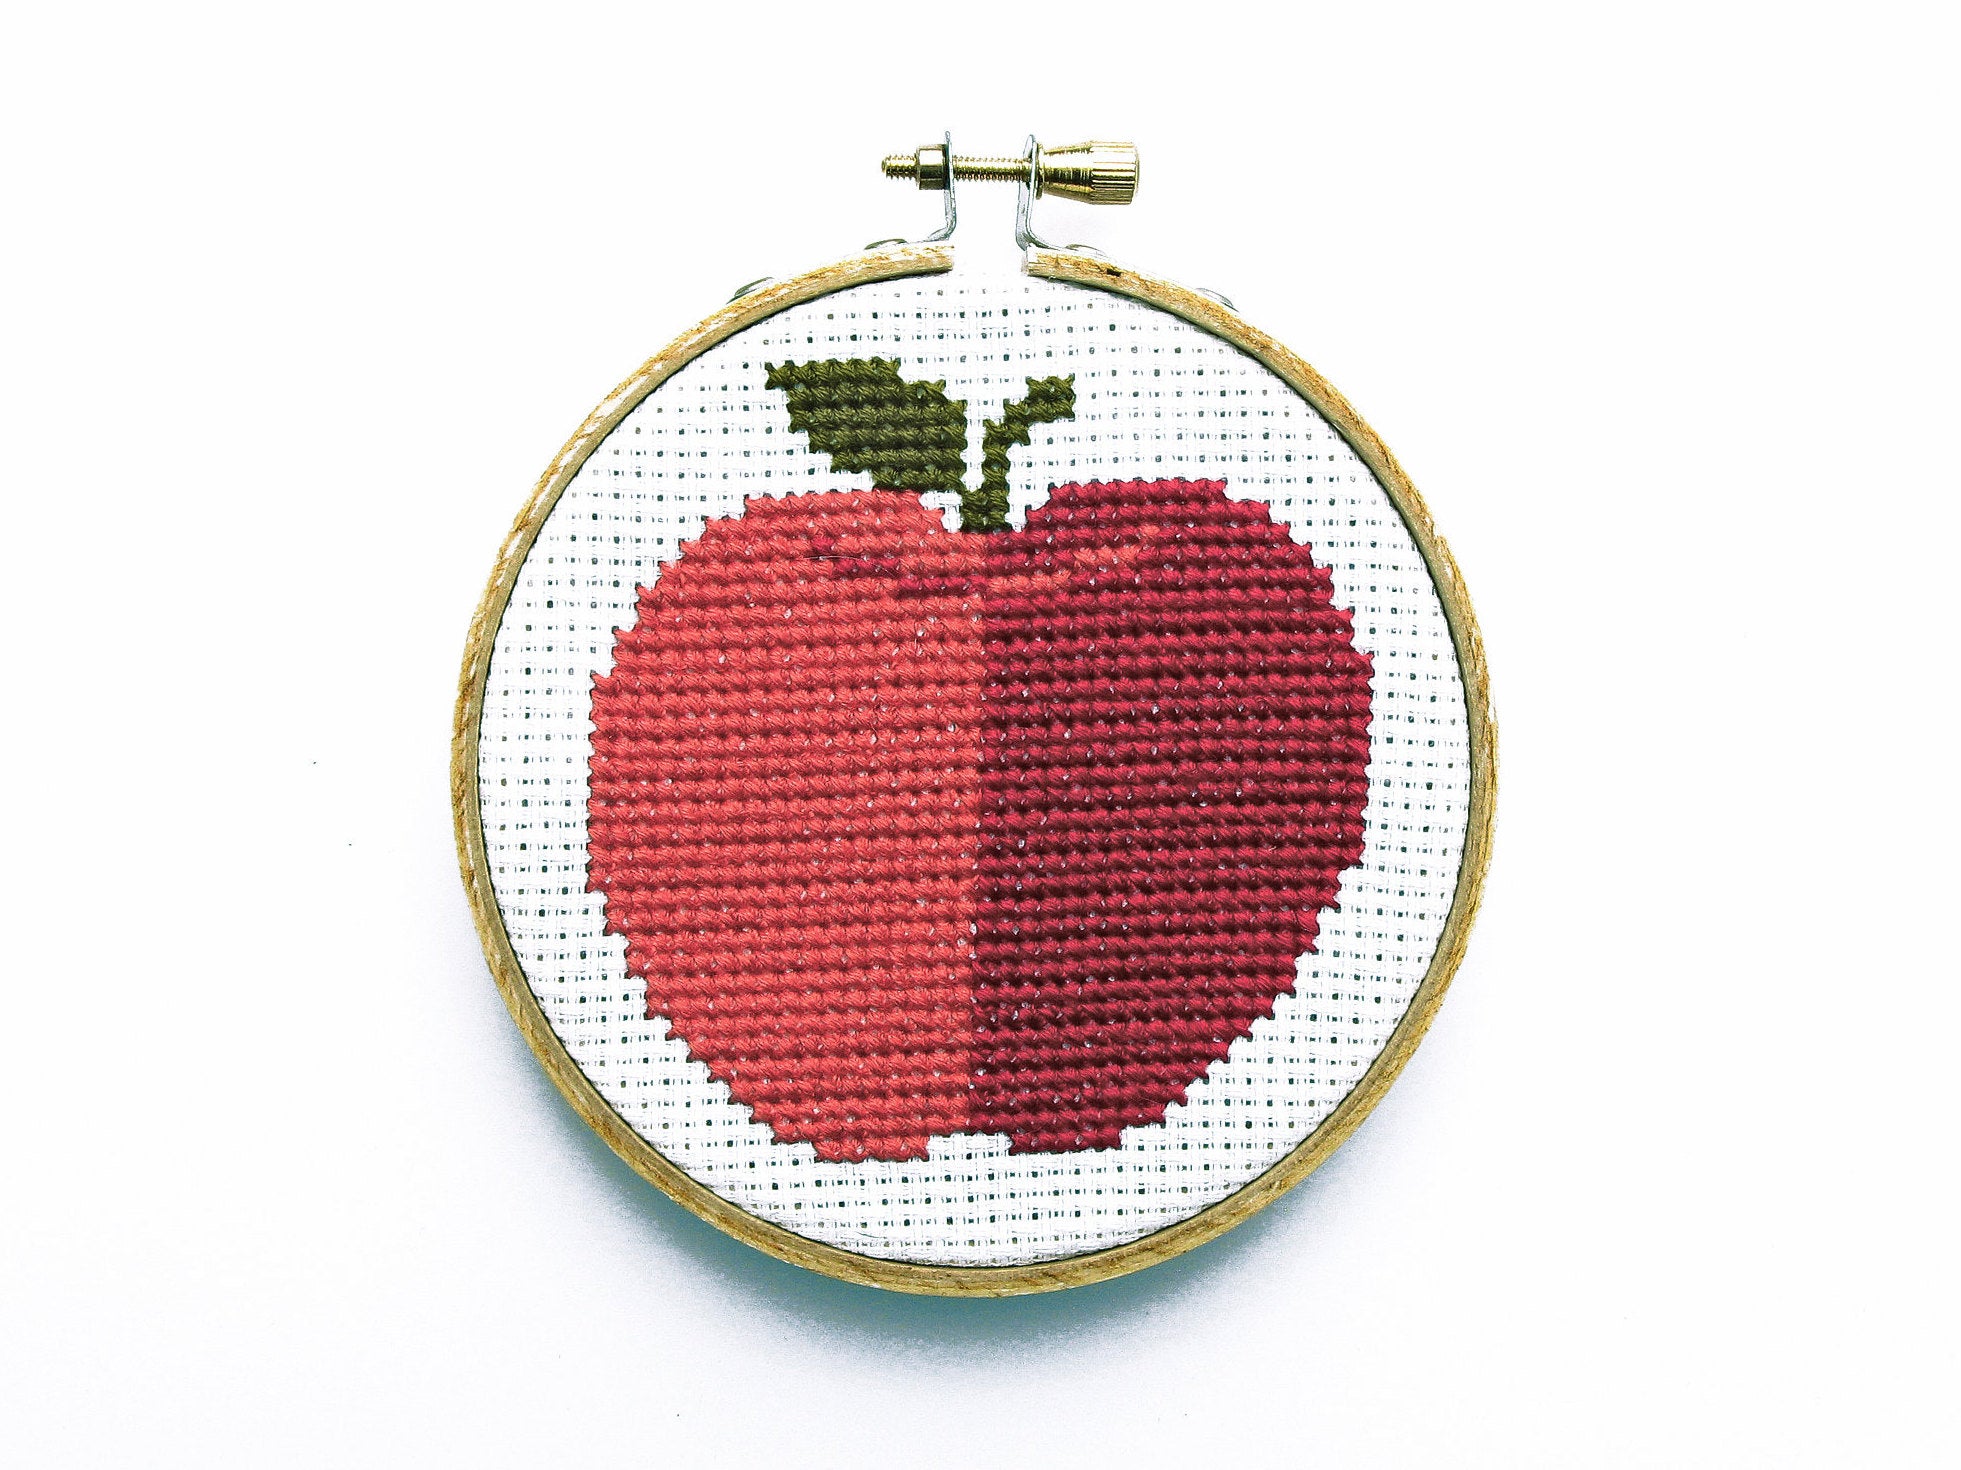 Big Apple Mini Cross Stitch Kit  Posie: Patterns and Kits to